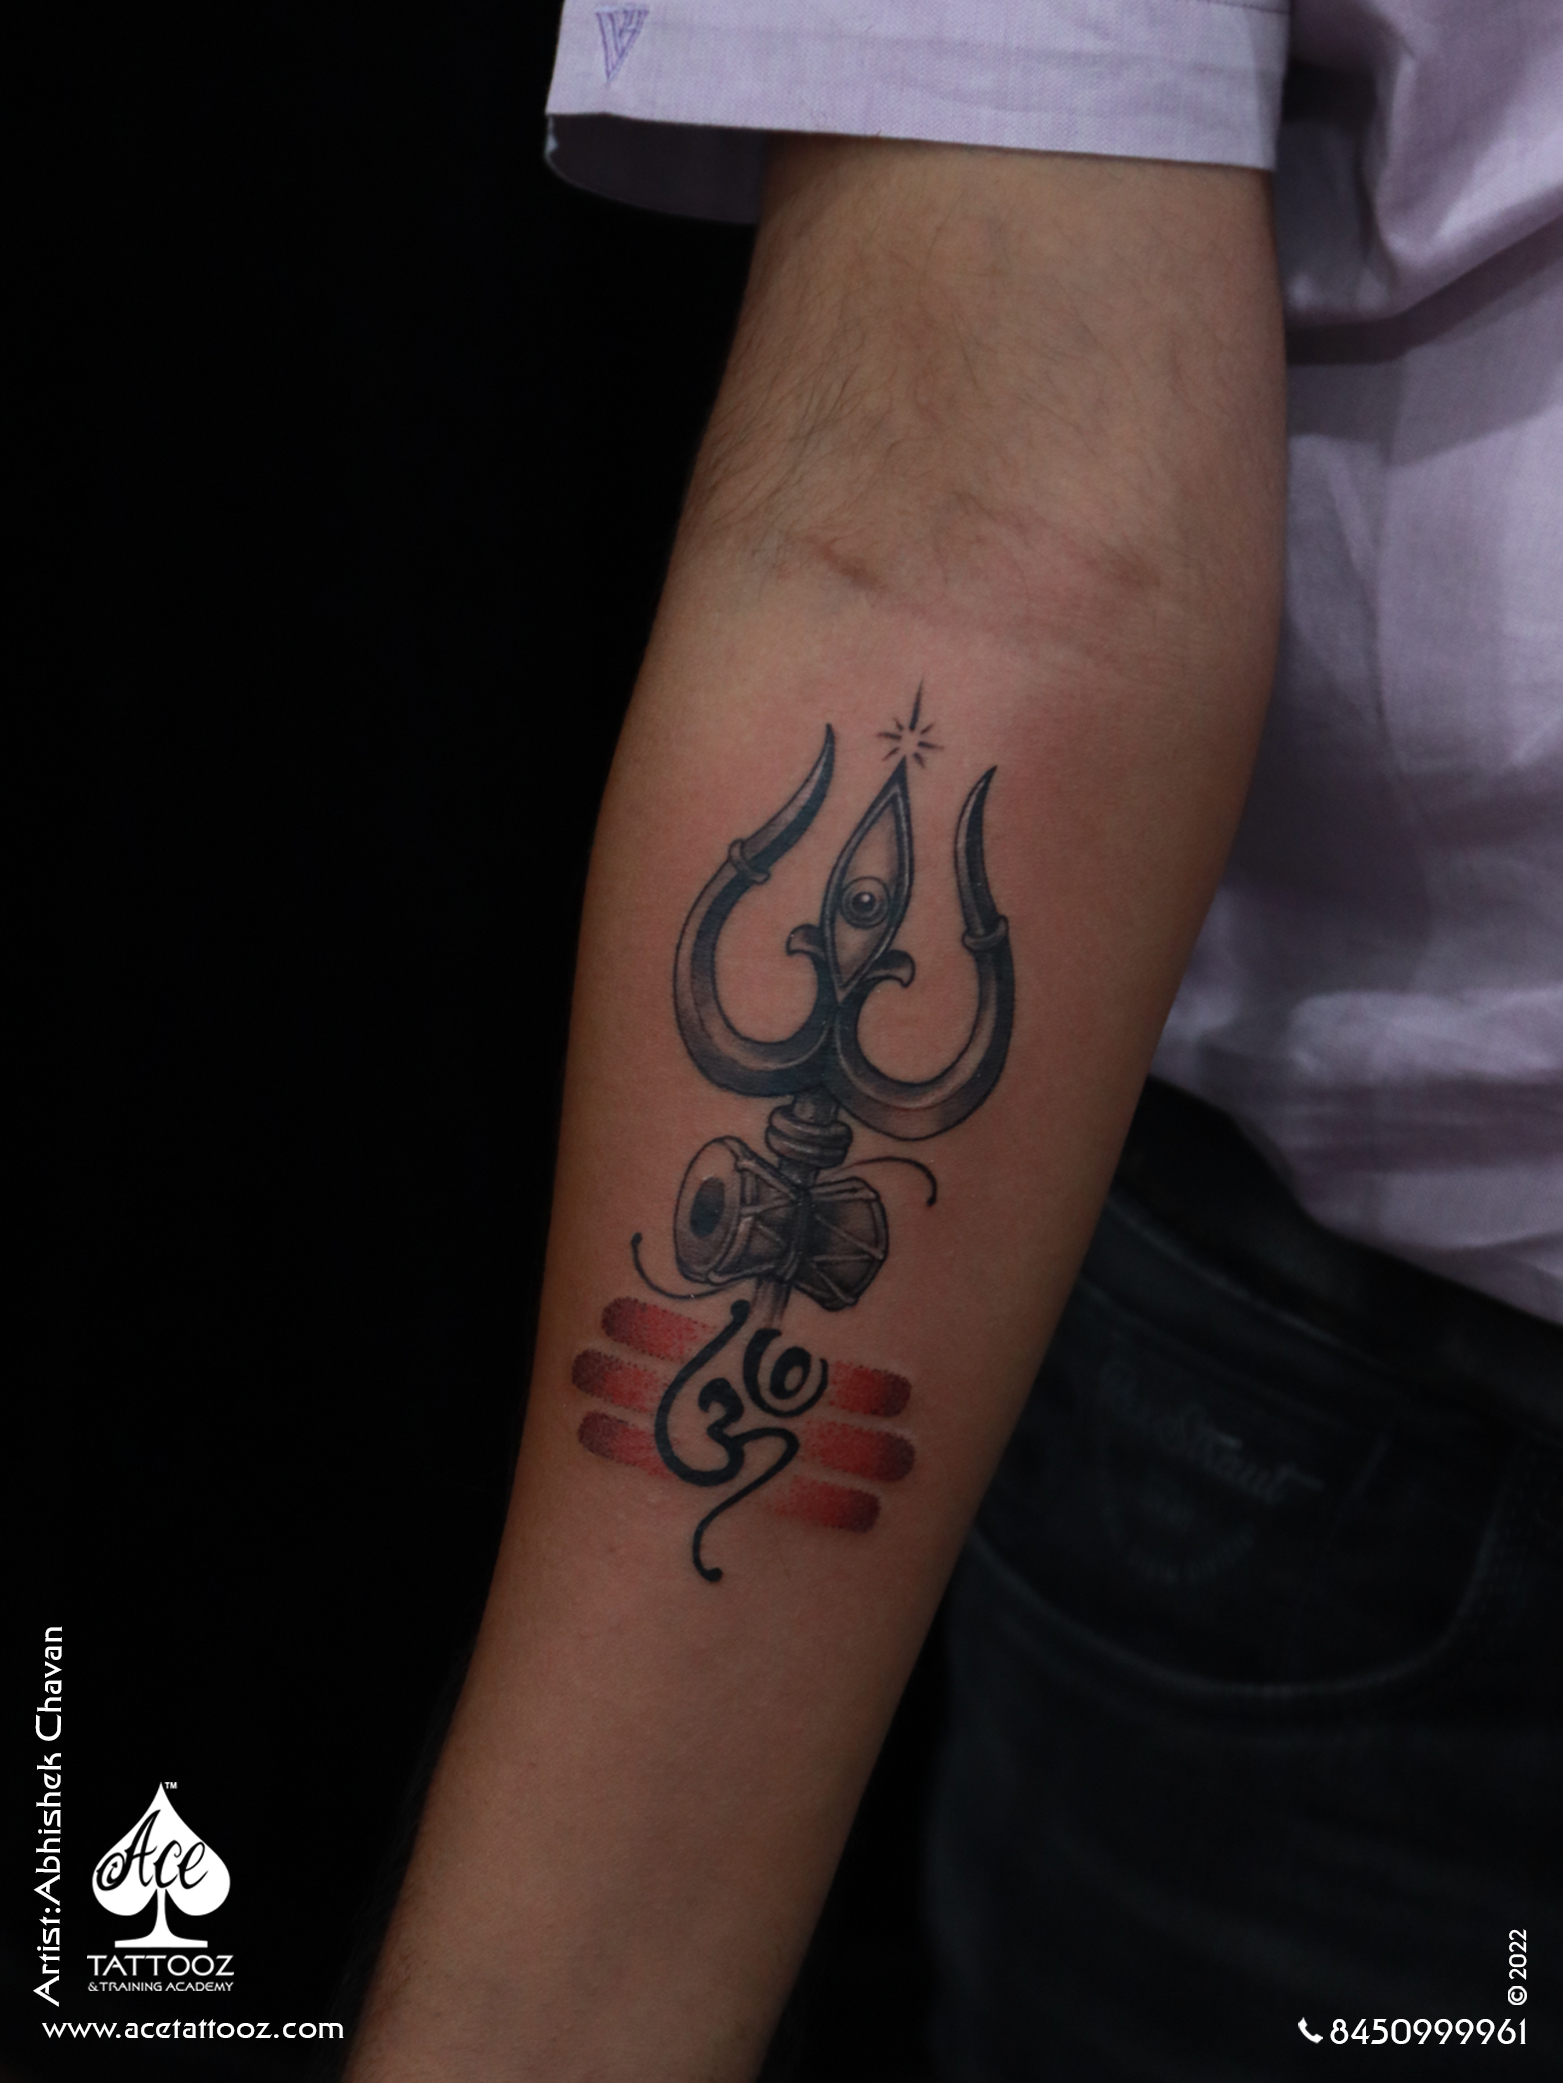 Om tattoo design